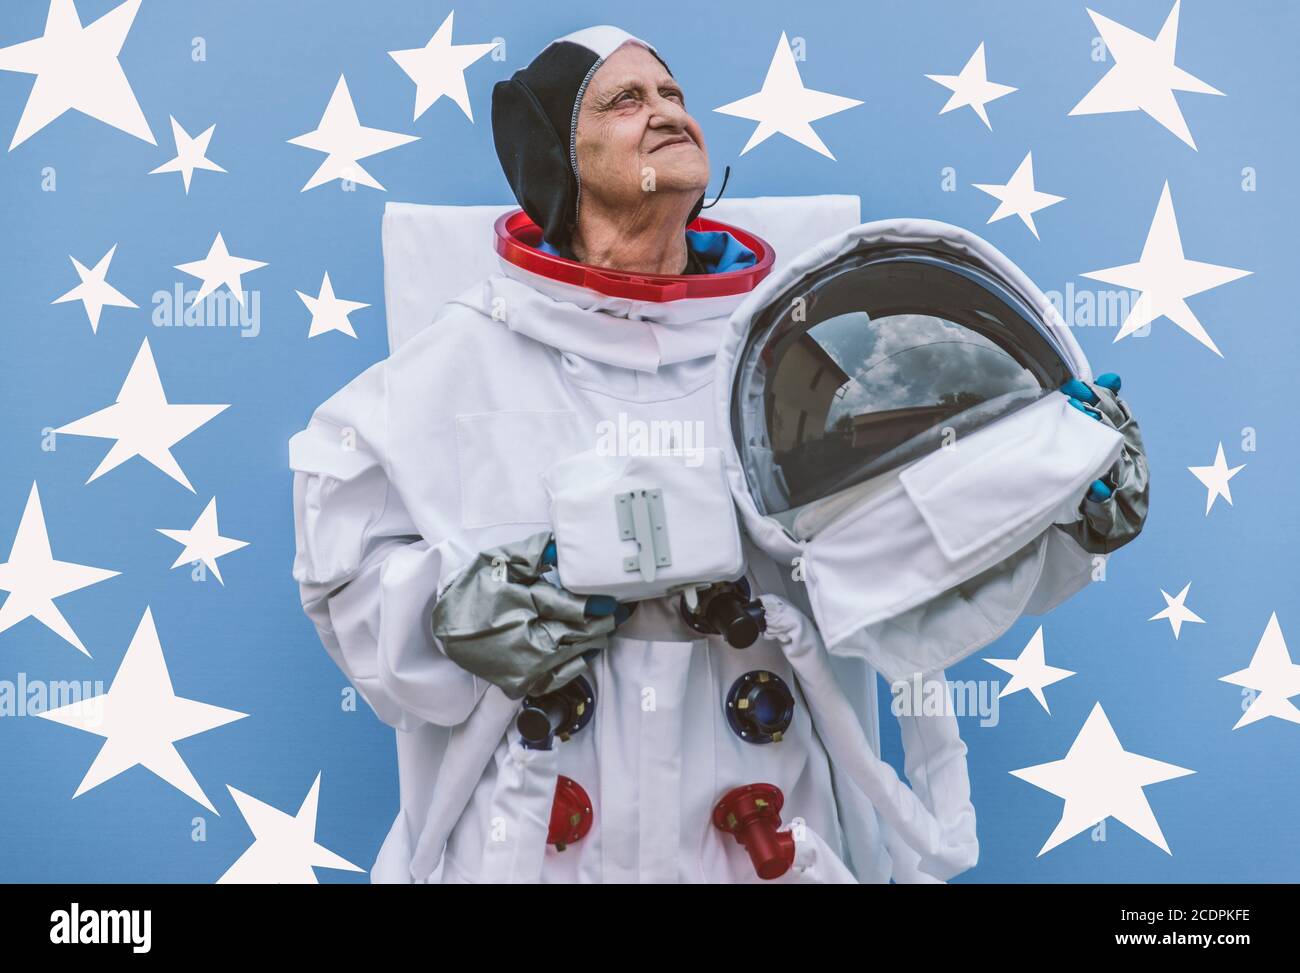 Großmutter Astronaut geht ins All, lustige Konzept über ältere Frau und ihre Träume Stockfoto